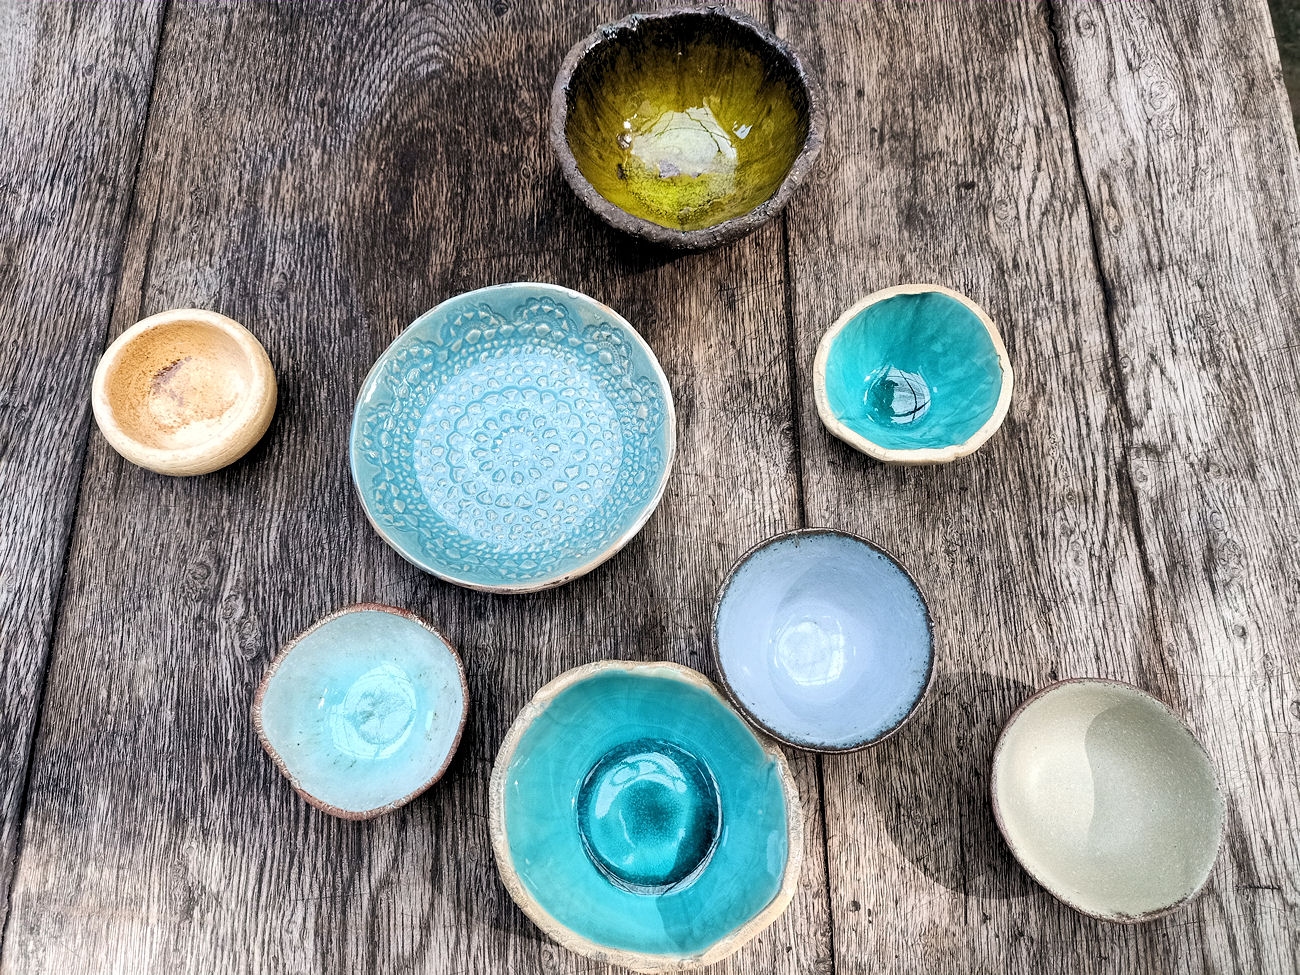 Na drewnianym stole leżą wykonane własnoręcznie różne kolorowe naczynia ceramiczne